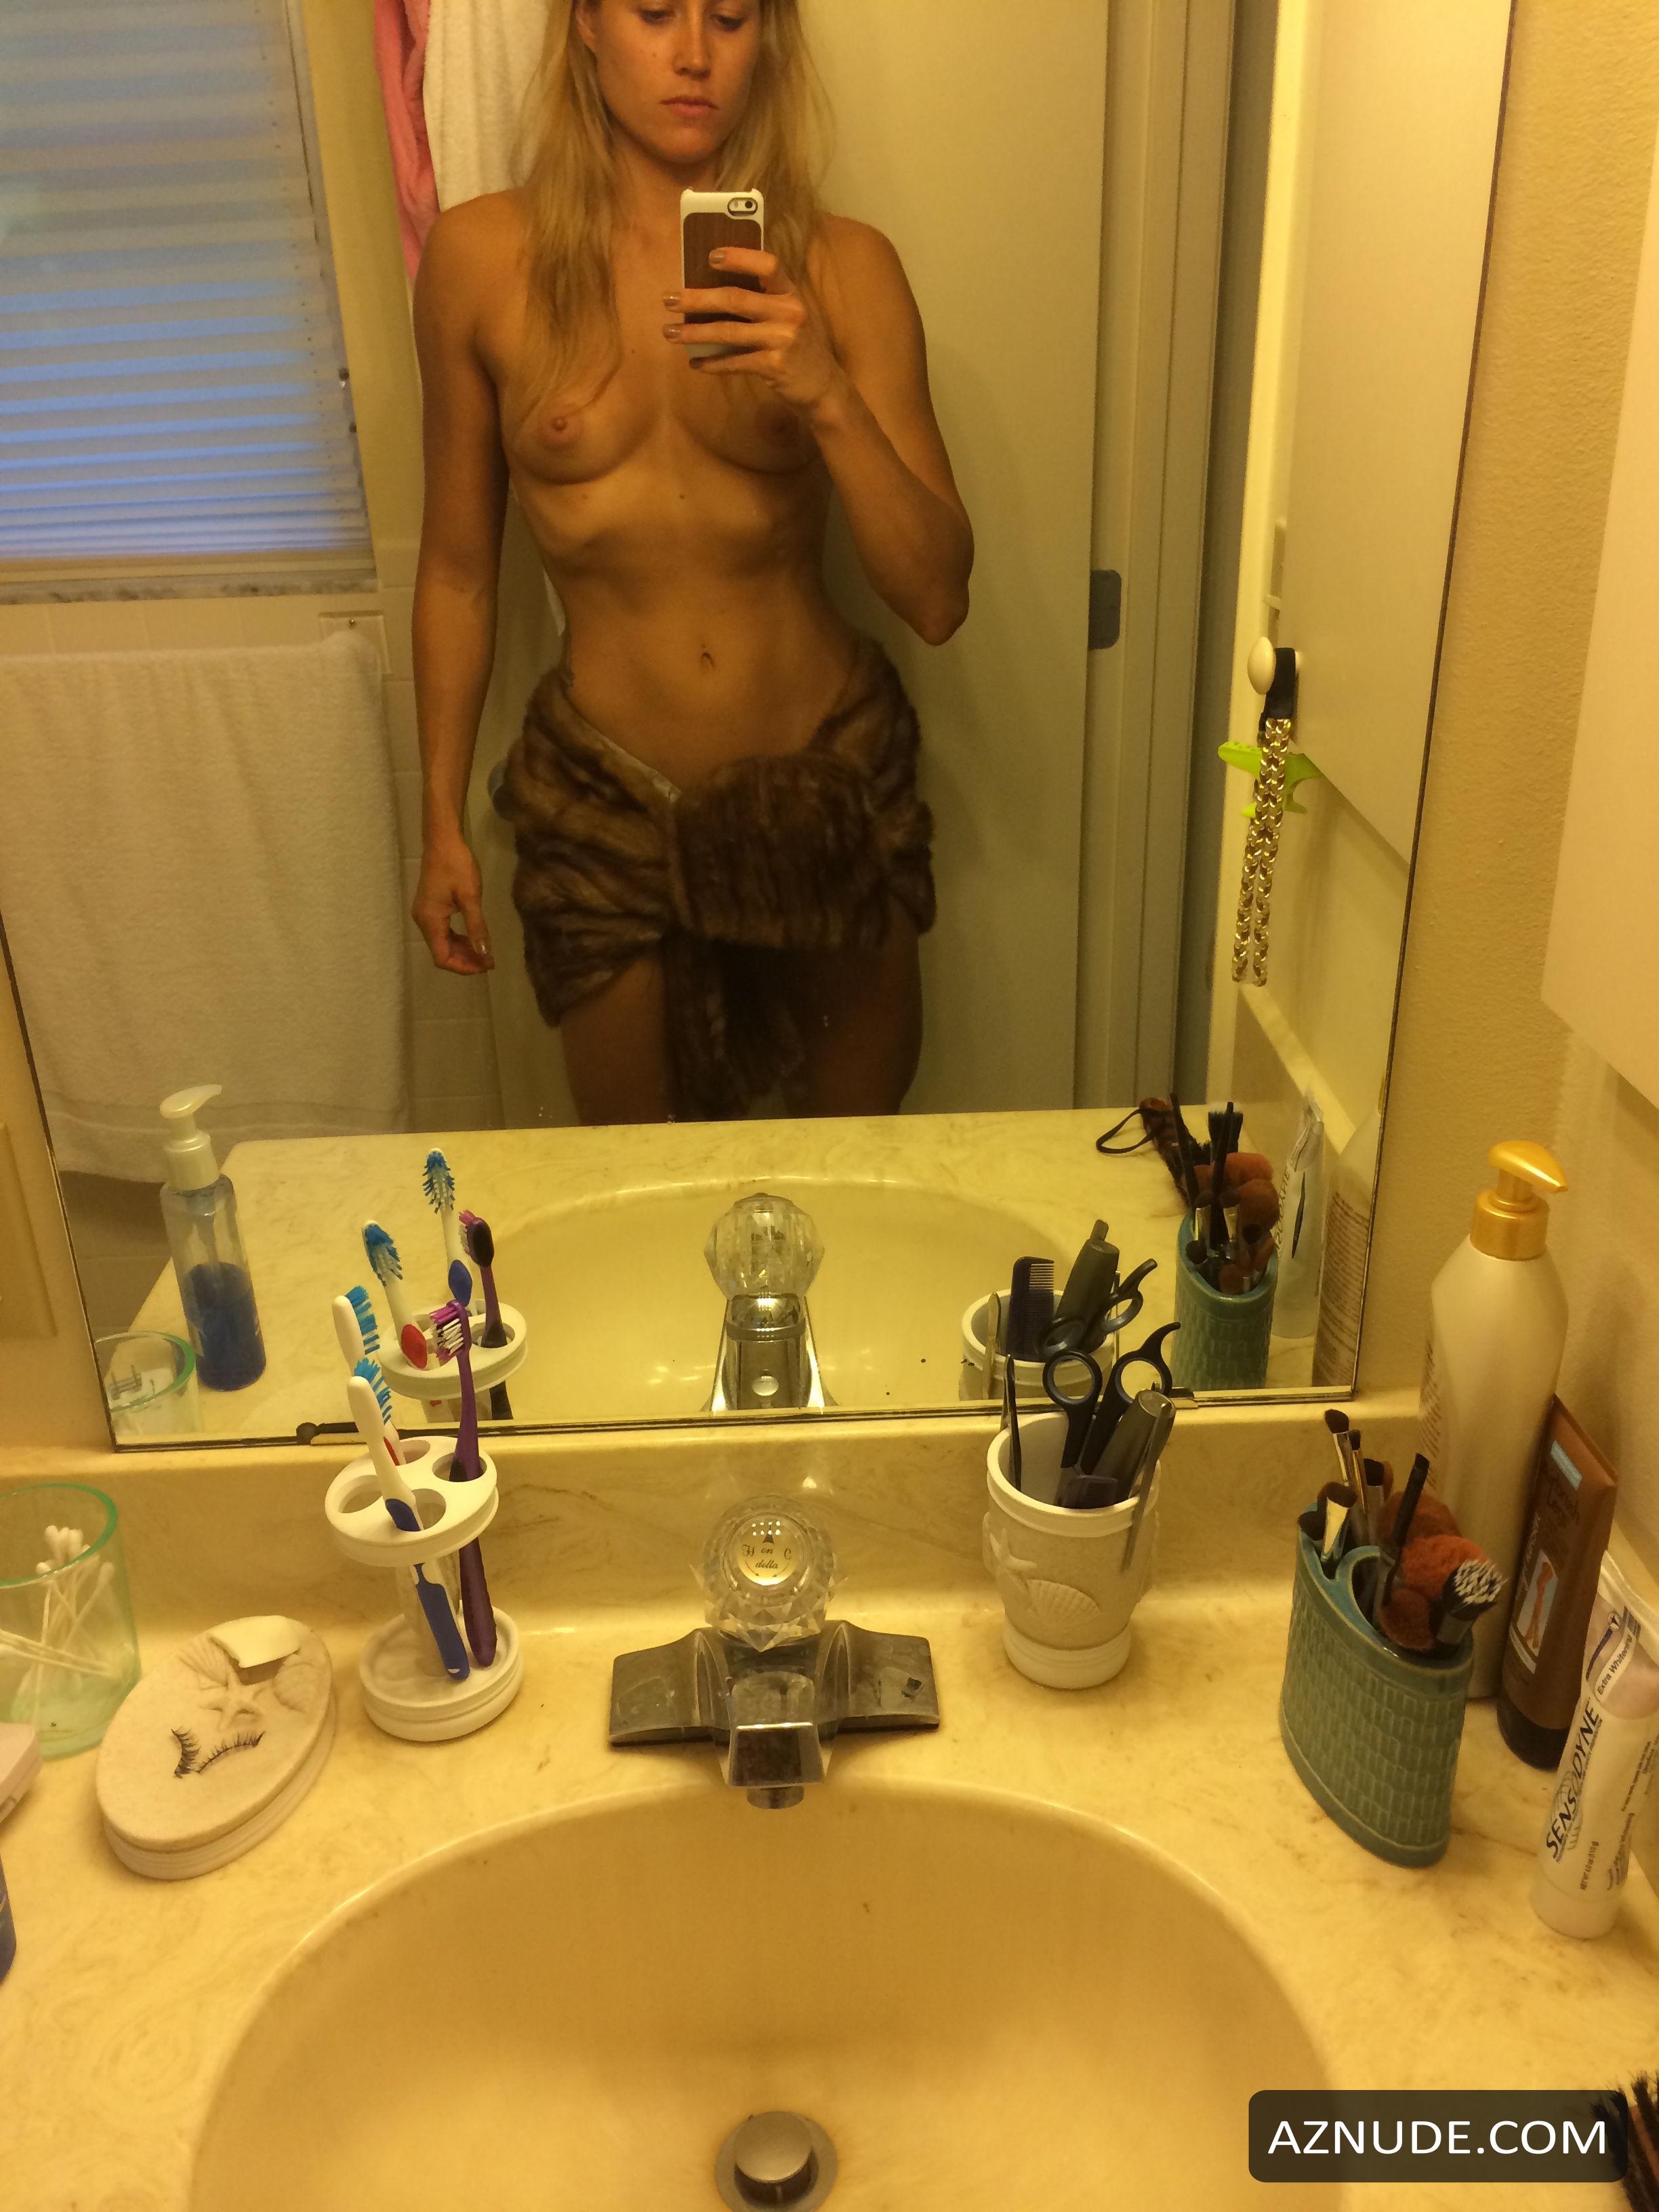 Kymberli Nance Nude and Hot Photos - AZNude